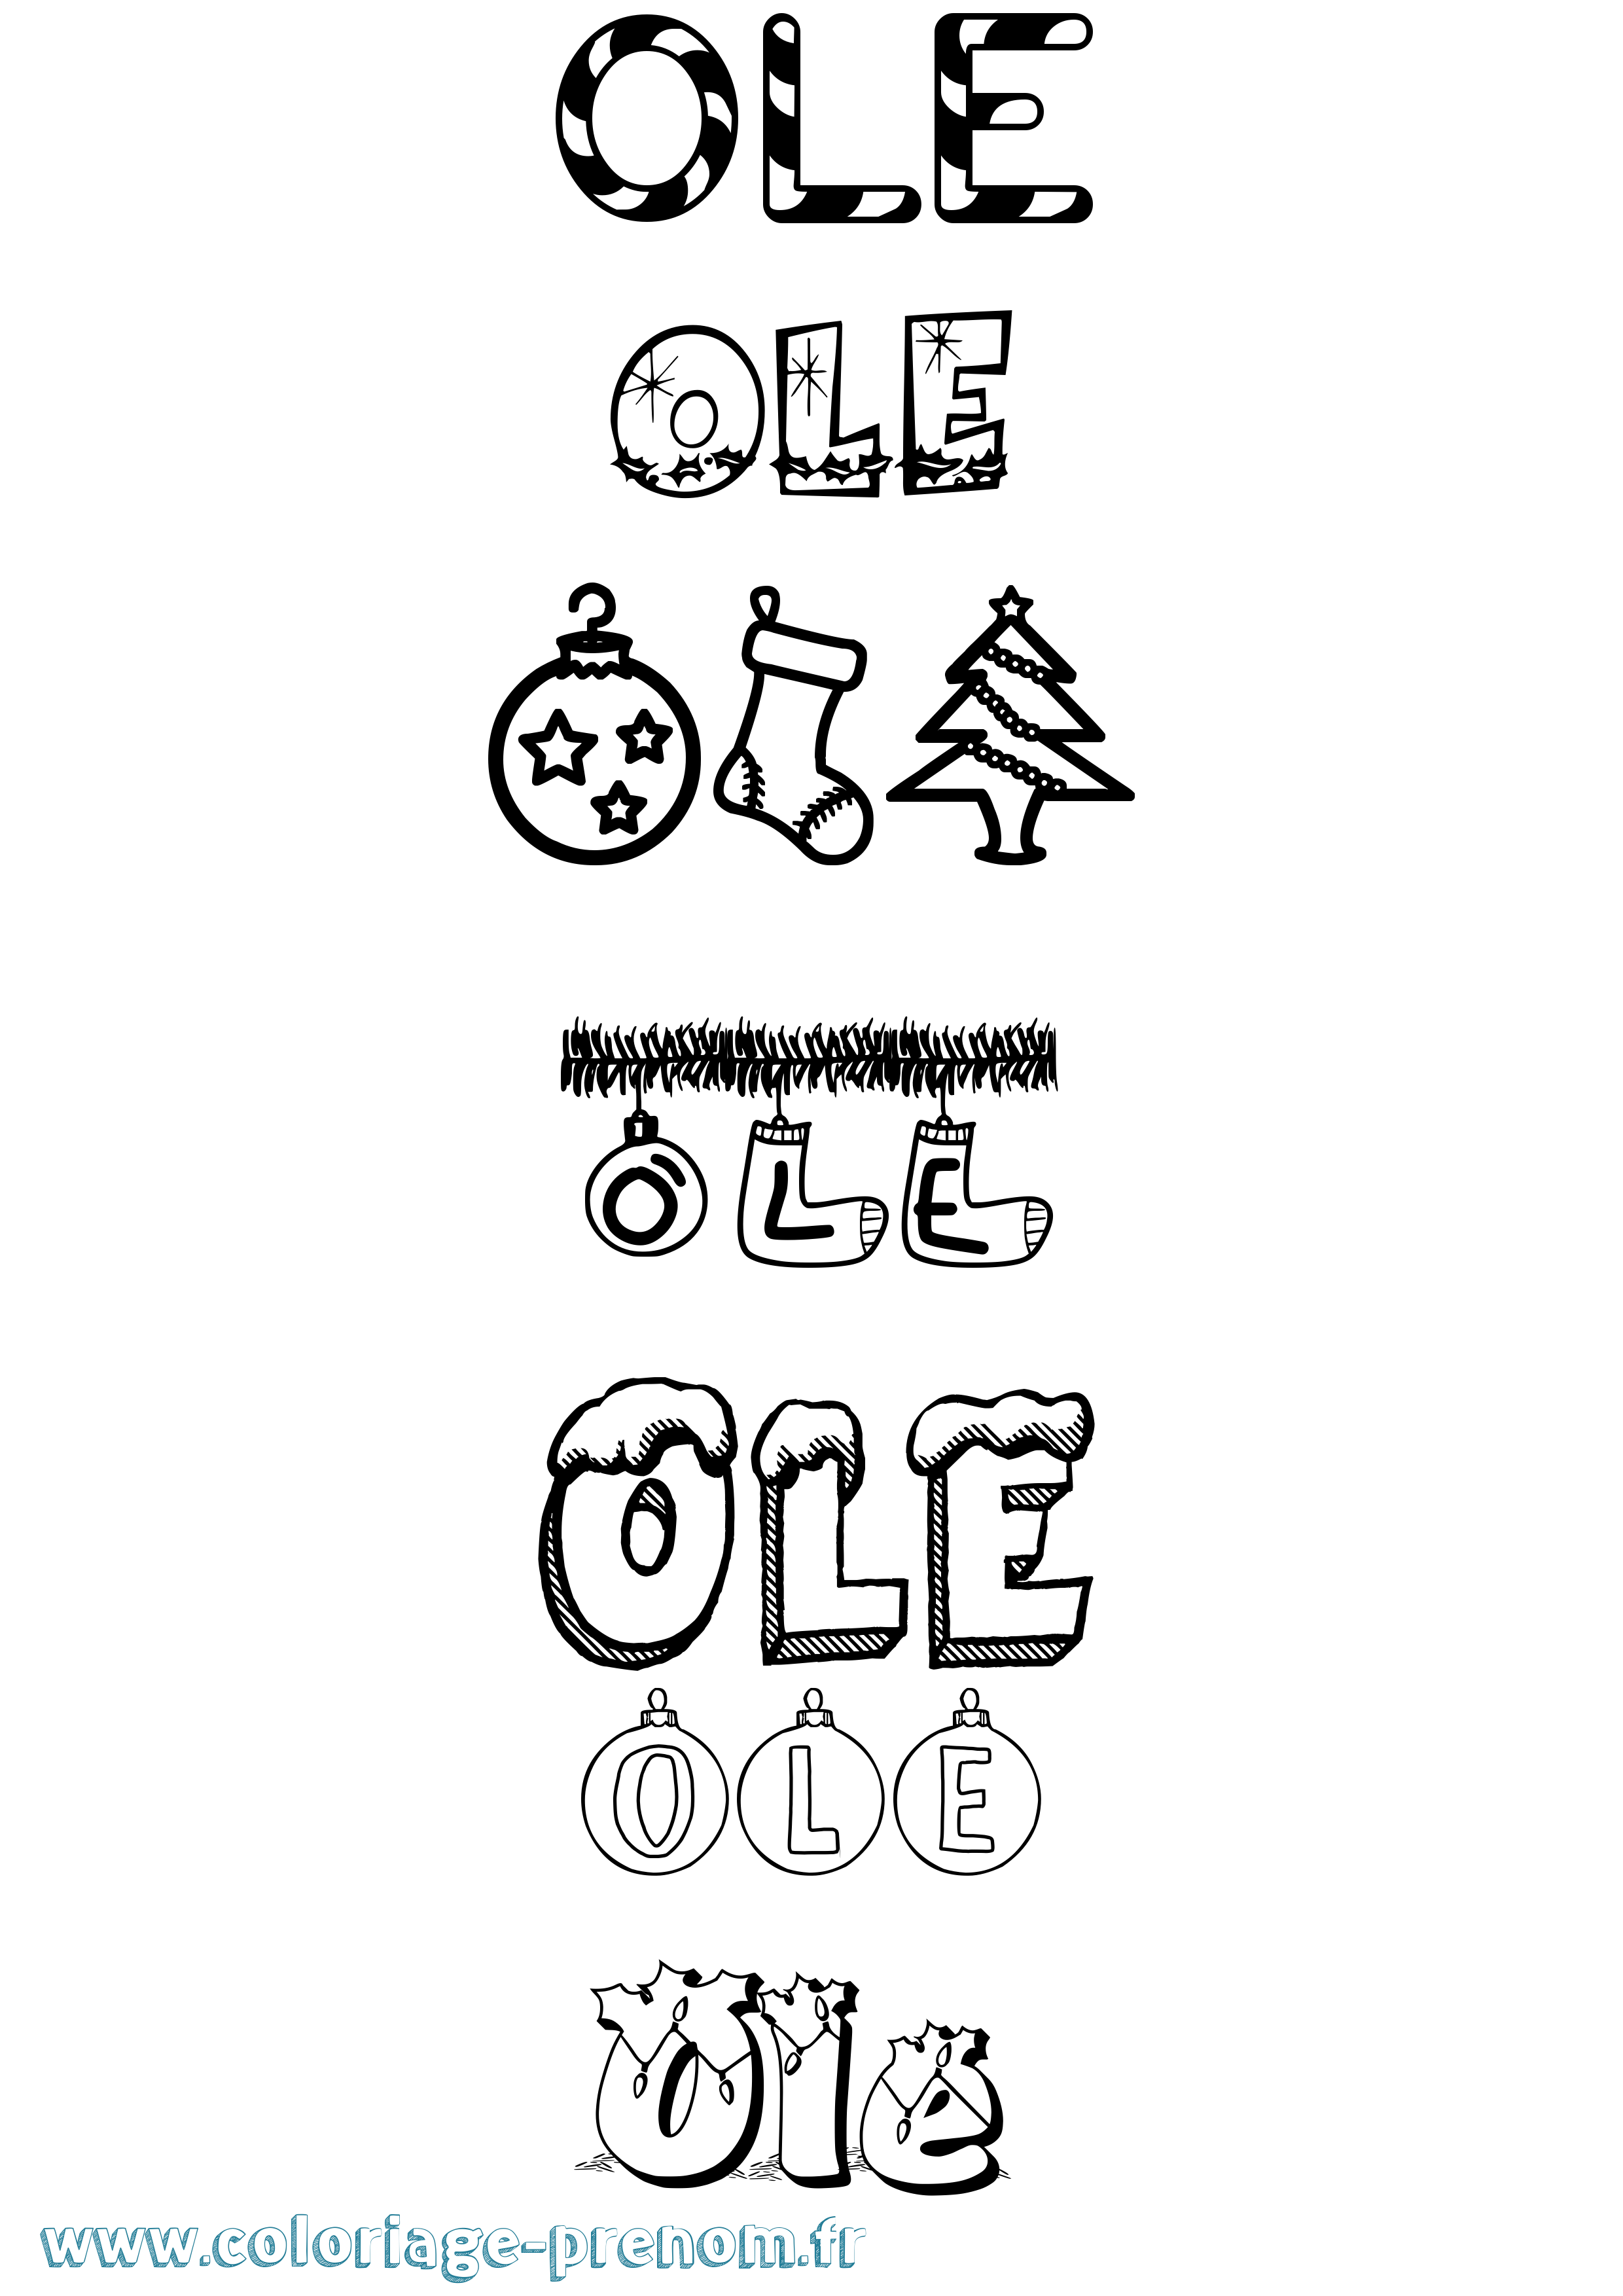 Coloriage prénom Ole Noël